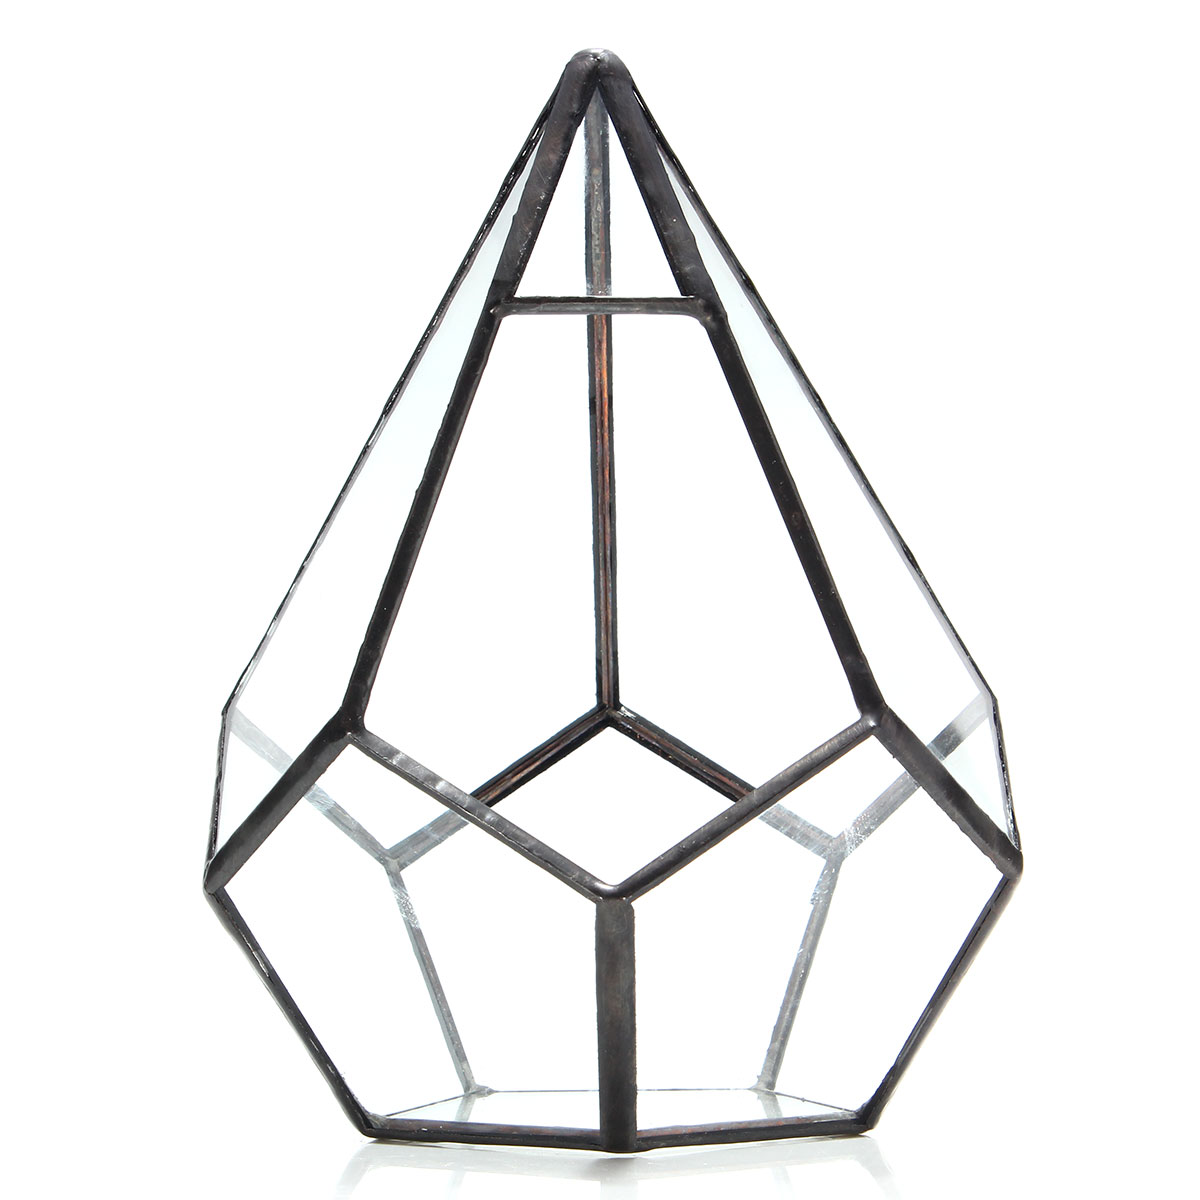 Triangle Greenhouse Glass Terrarium DIY Micro Landscape Succulent Plants Flower Pot